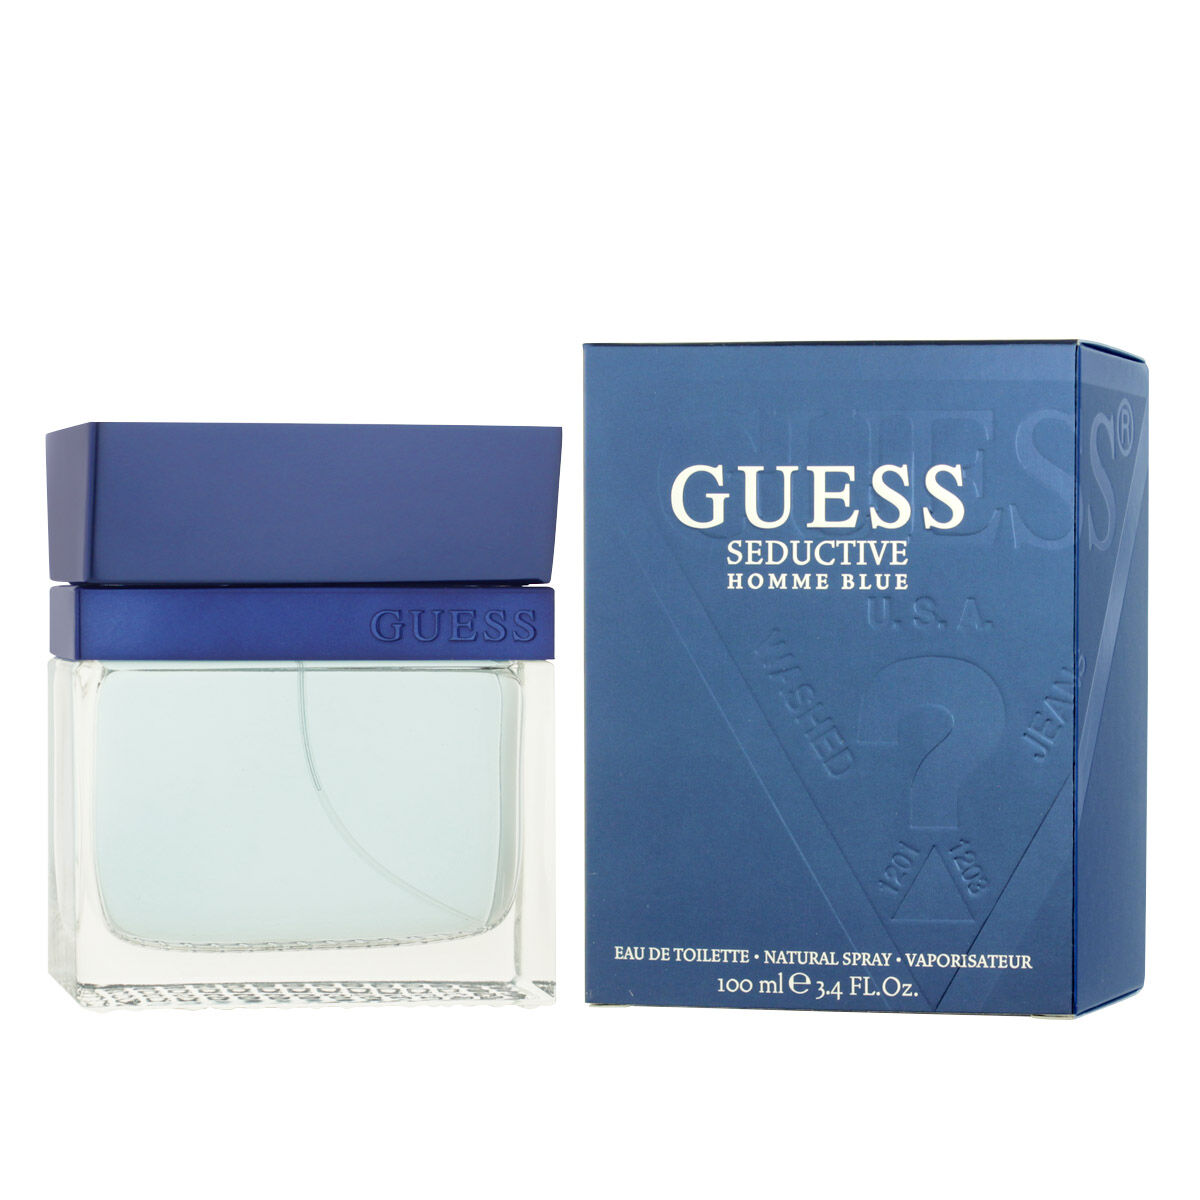 Parfum Homme Guess EDT 100 ml Seductive Homme Blue